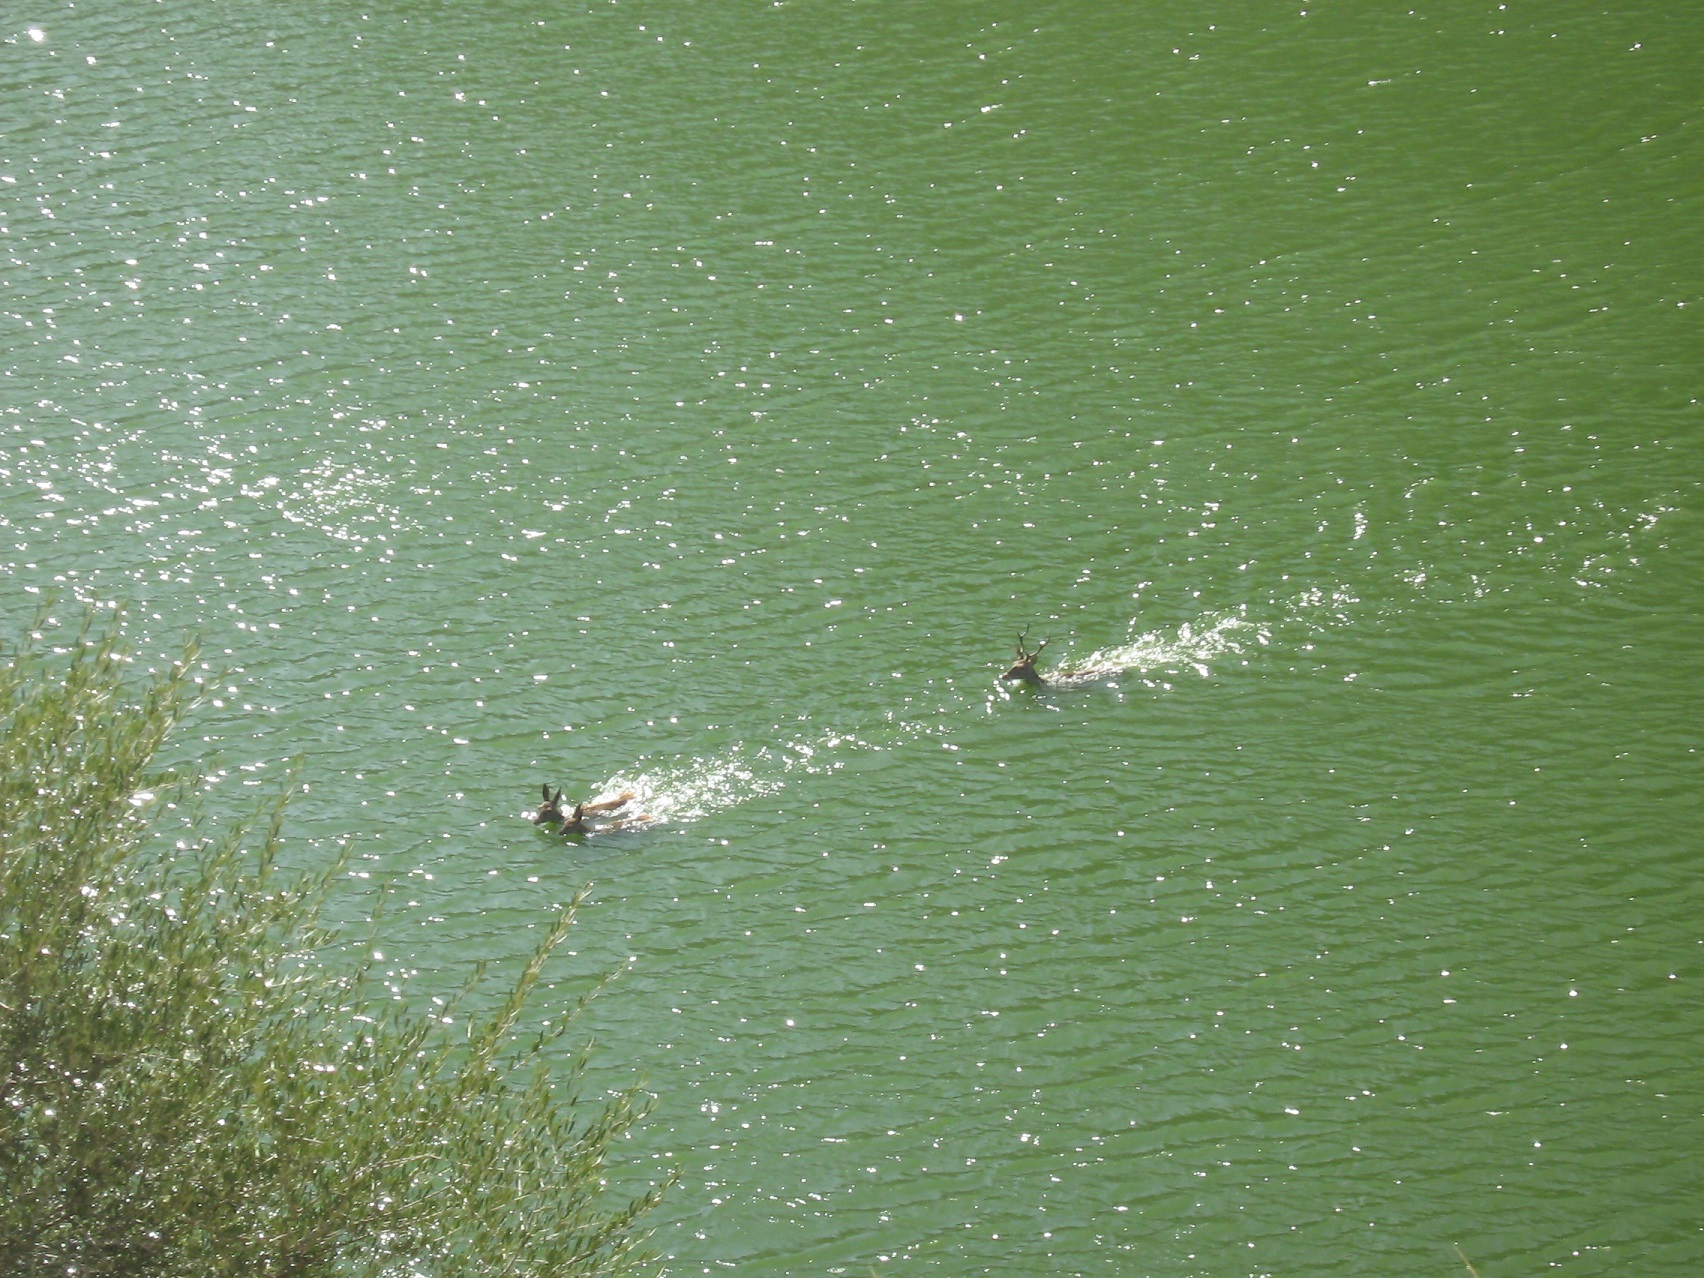 Detalle del ciervo nadando en el río y persiguiendo a dos ciervas